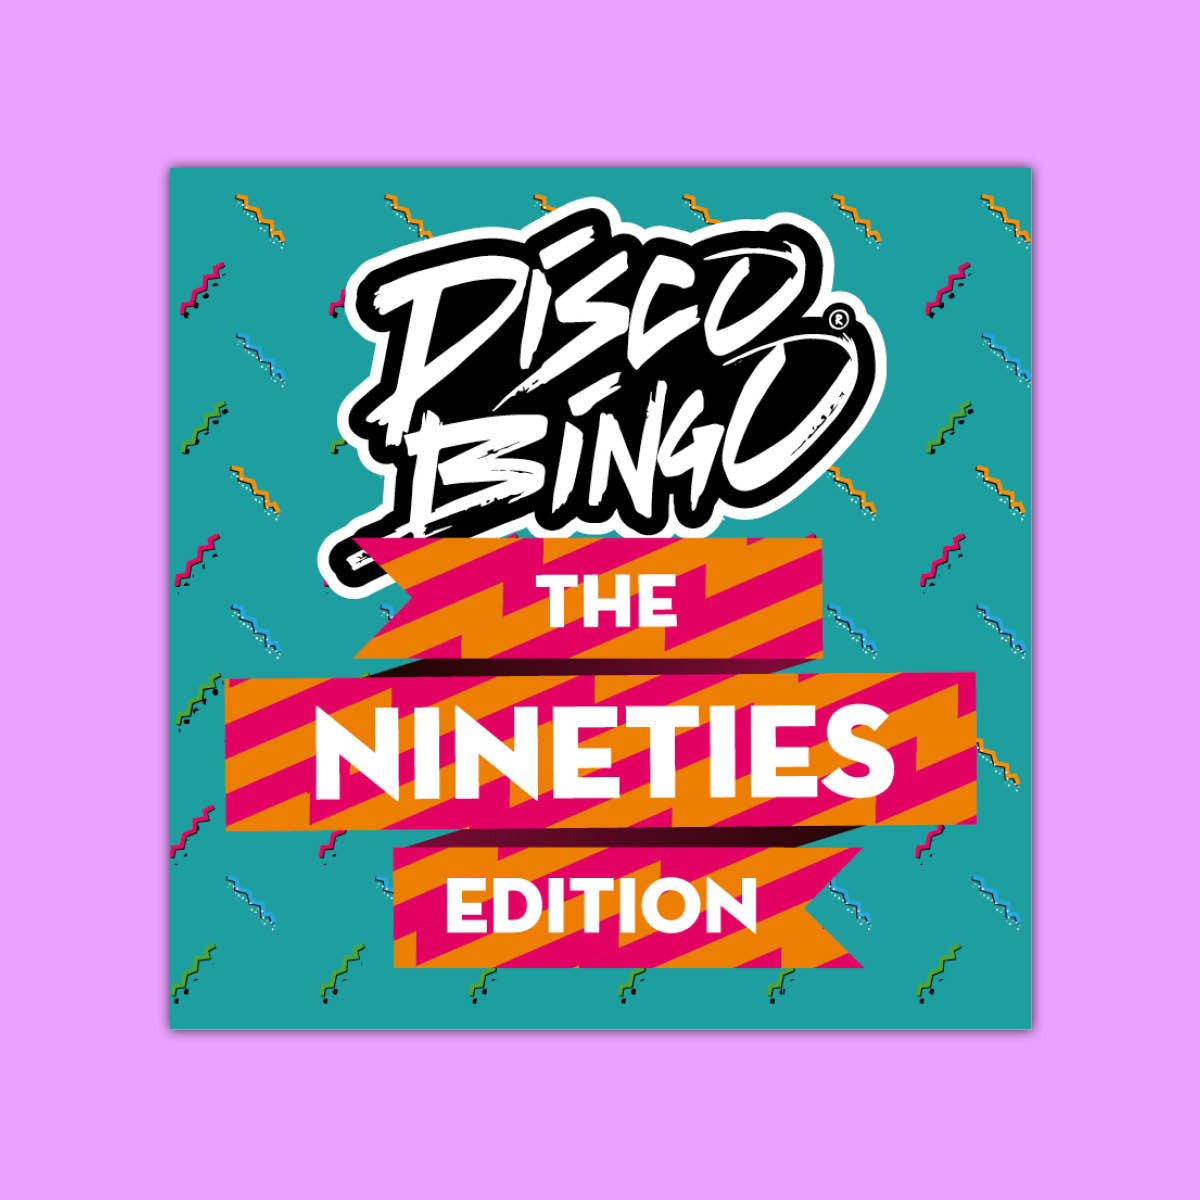 Disco Bingo The Nineties Edition